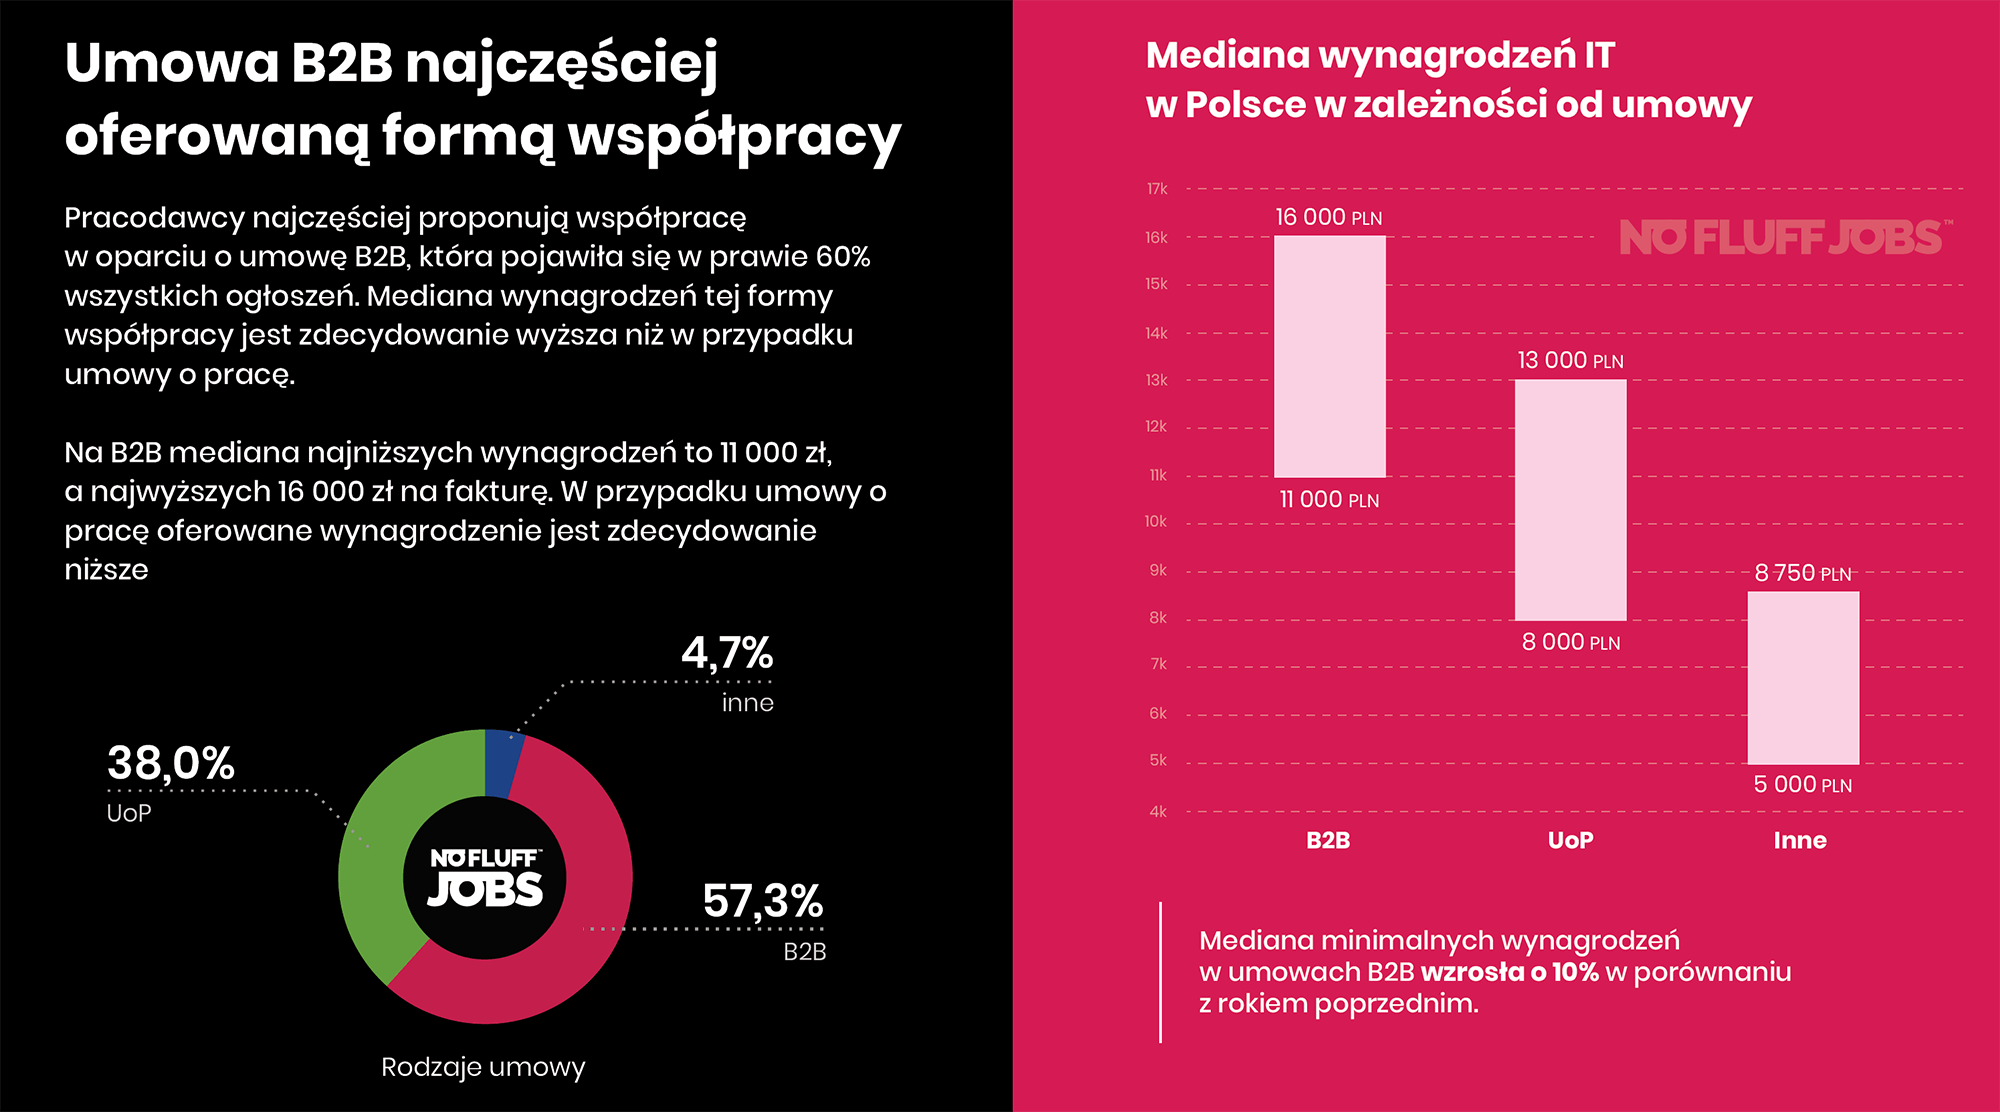 Mediana wynagrodzeń w IT w Polsce (2019) w zależności od umowy